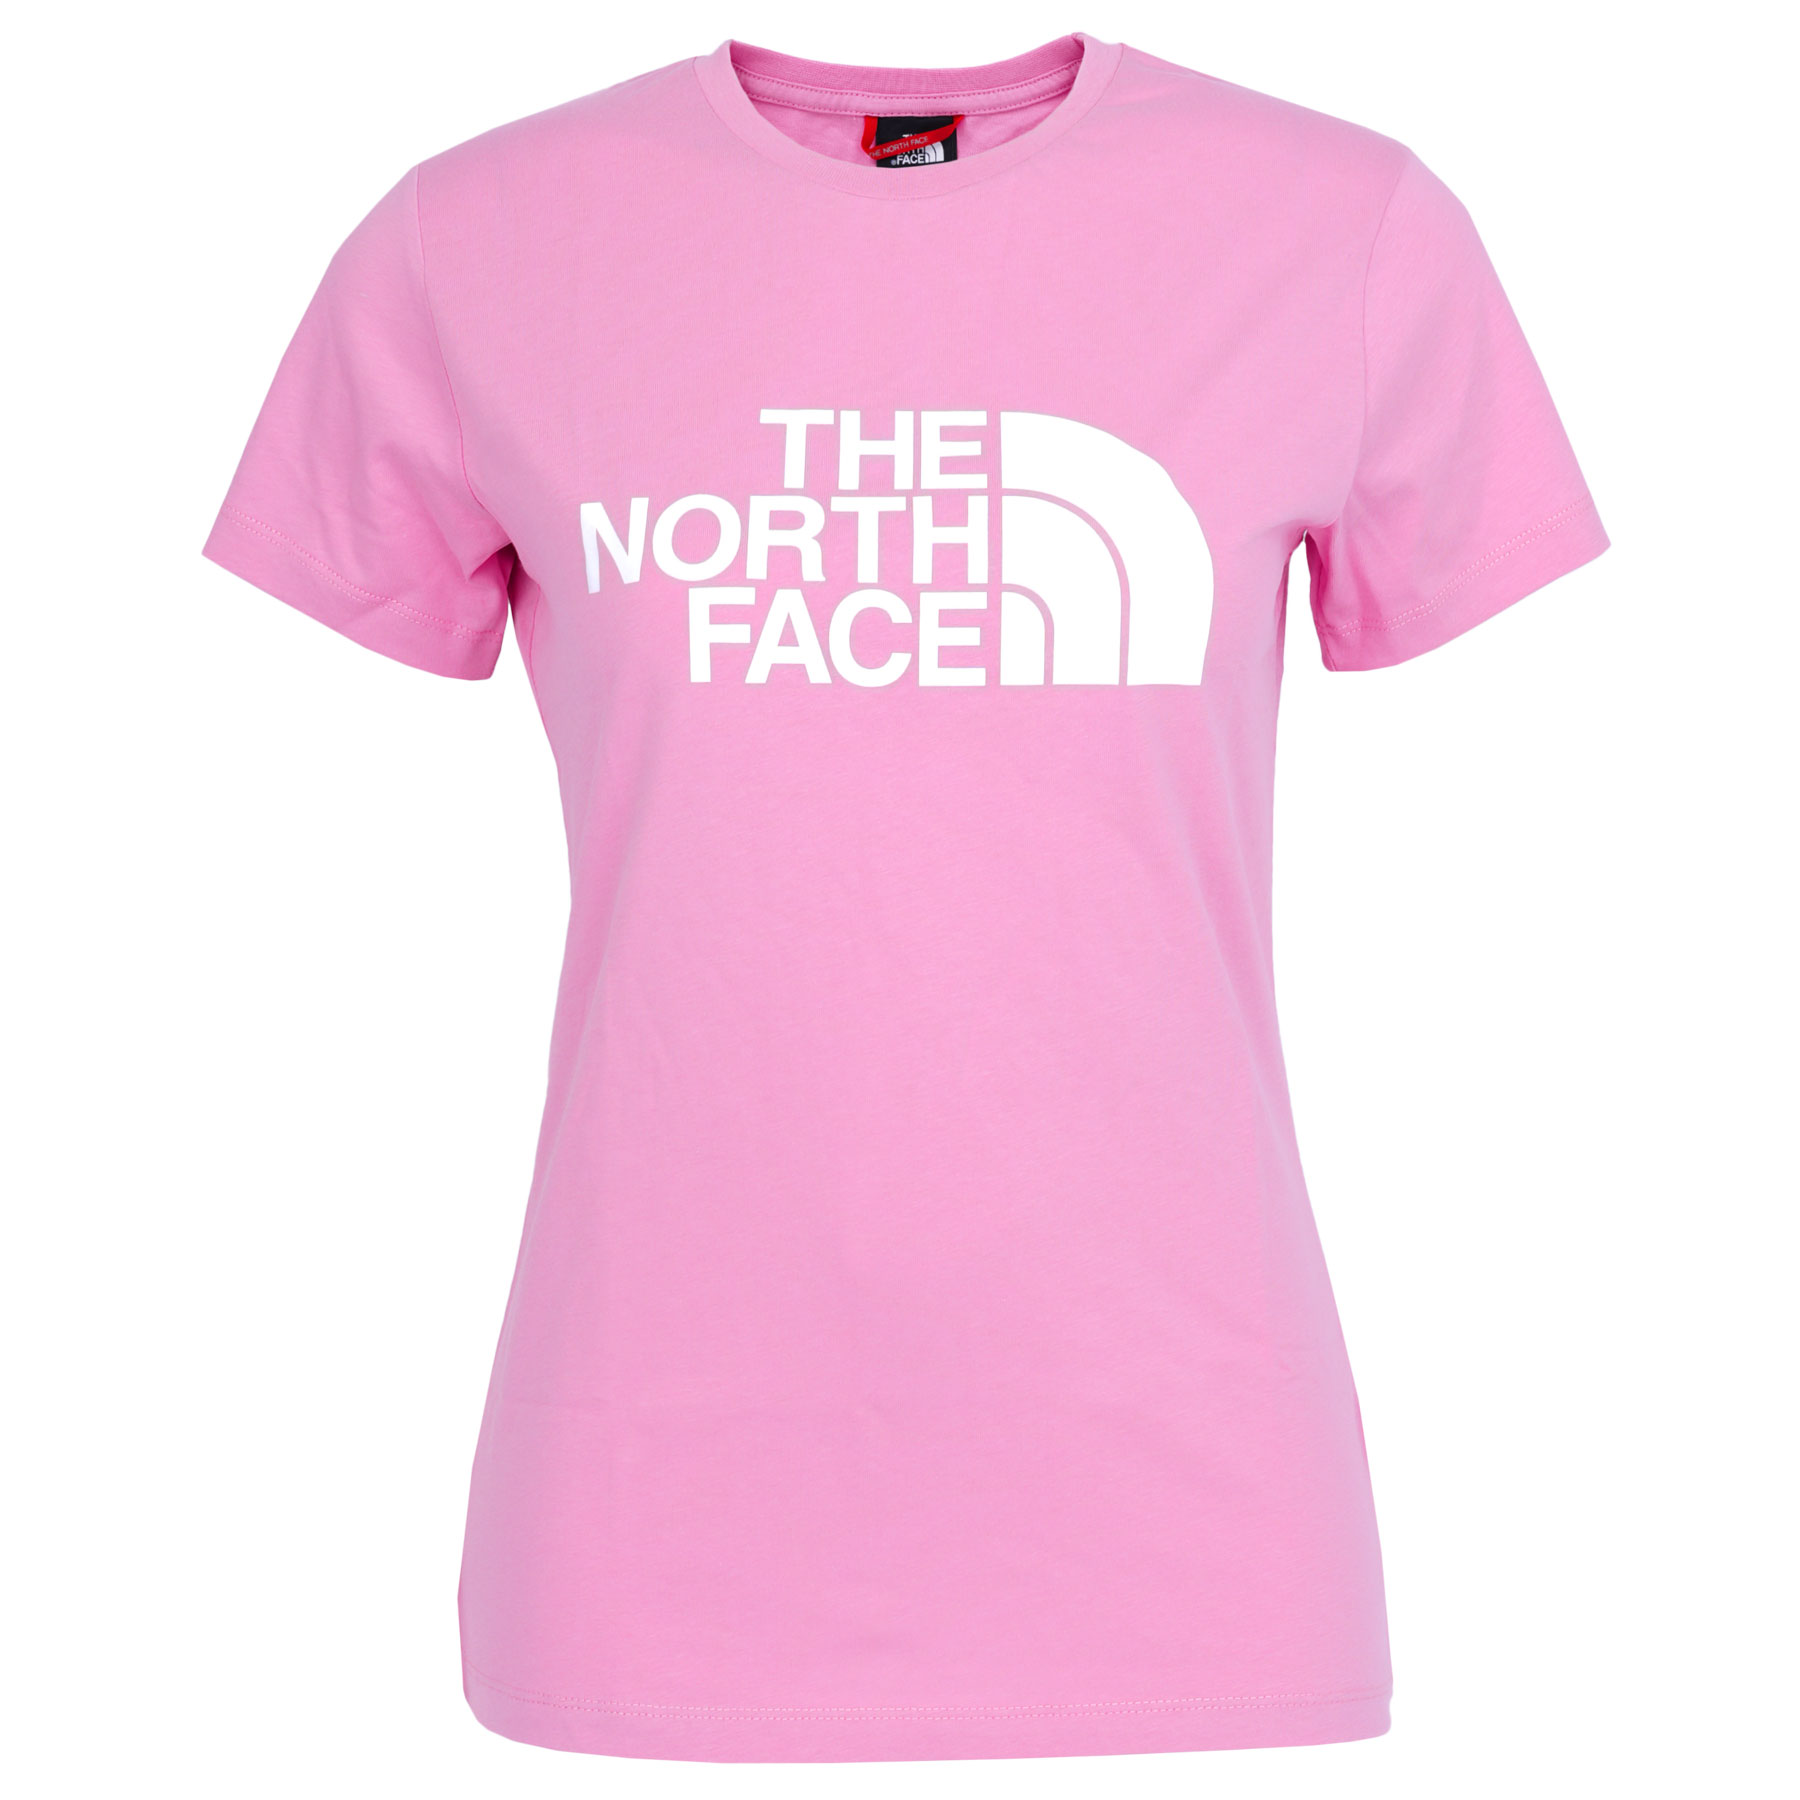 Produktbild von The North Face Easy T-Shirt Damen 4T1Q - Orchid Pink